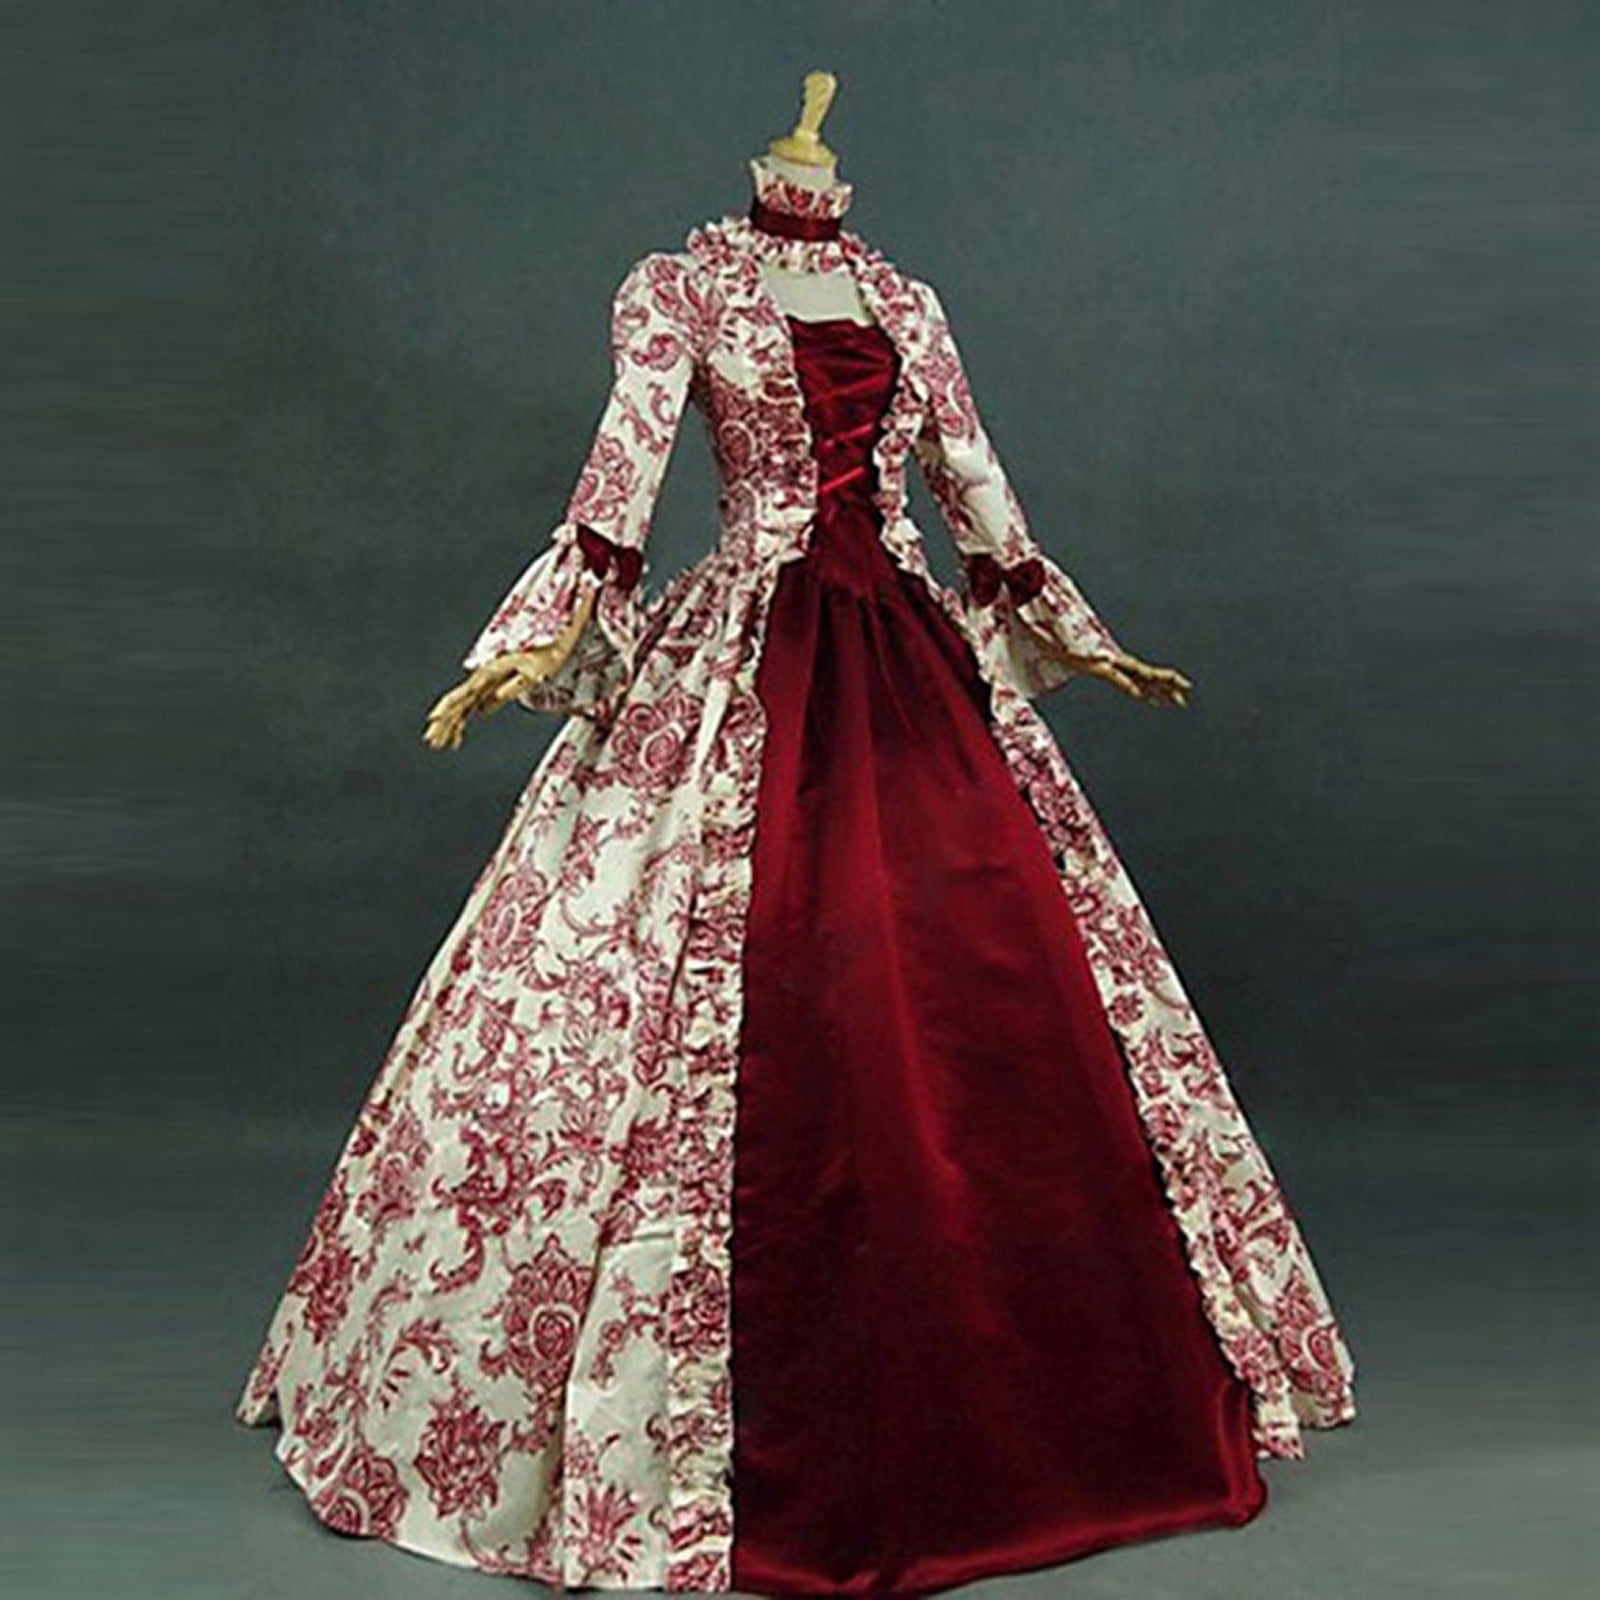 1800s dresses